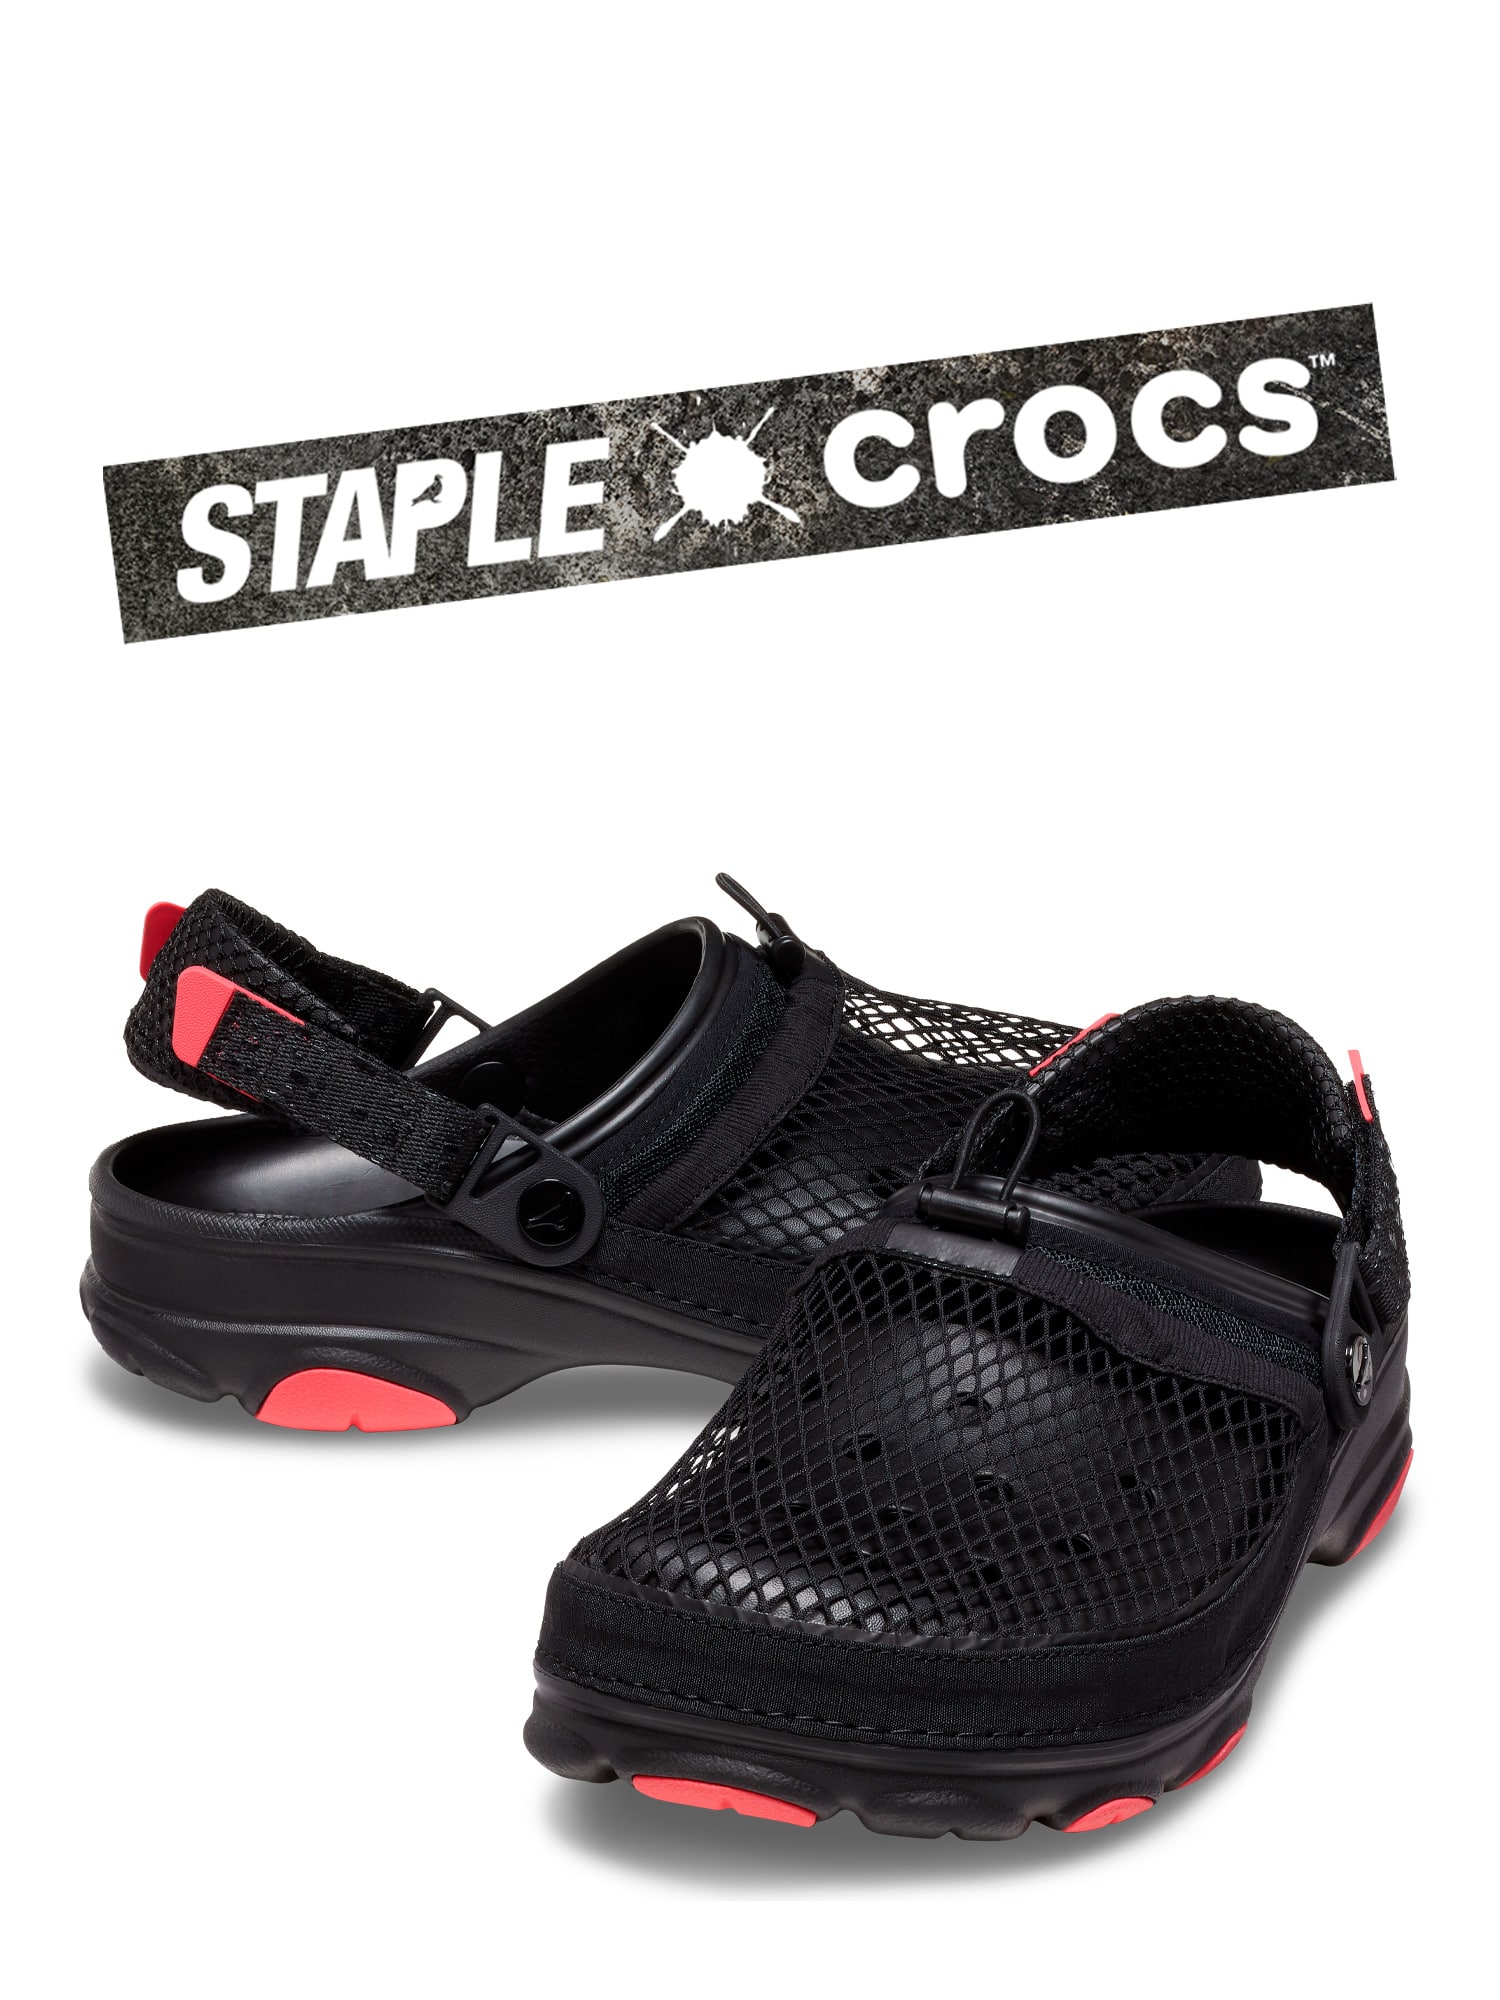 【限定コラボ商品】Staple Homing Pigeon × Crocs